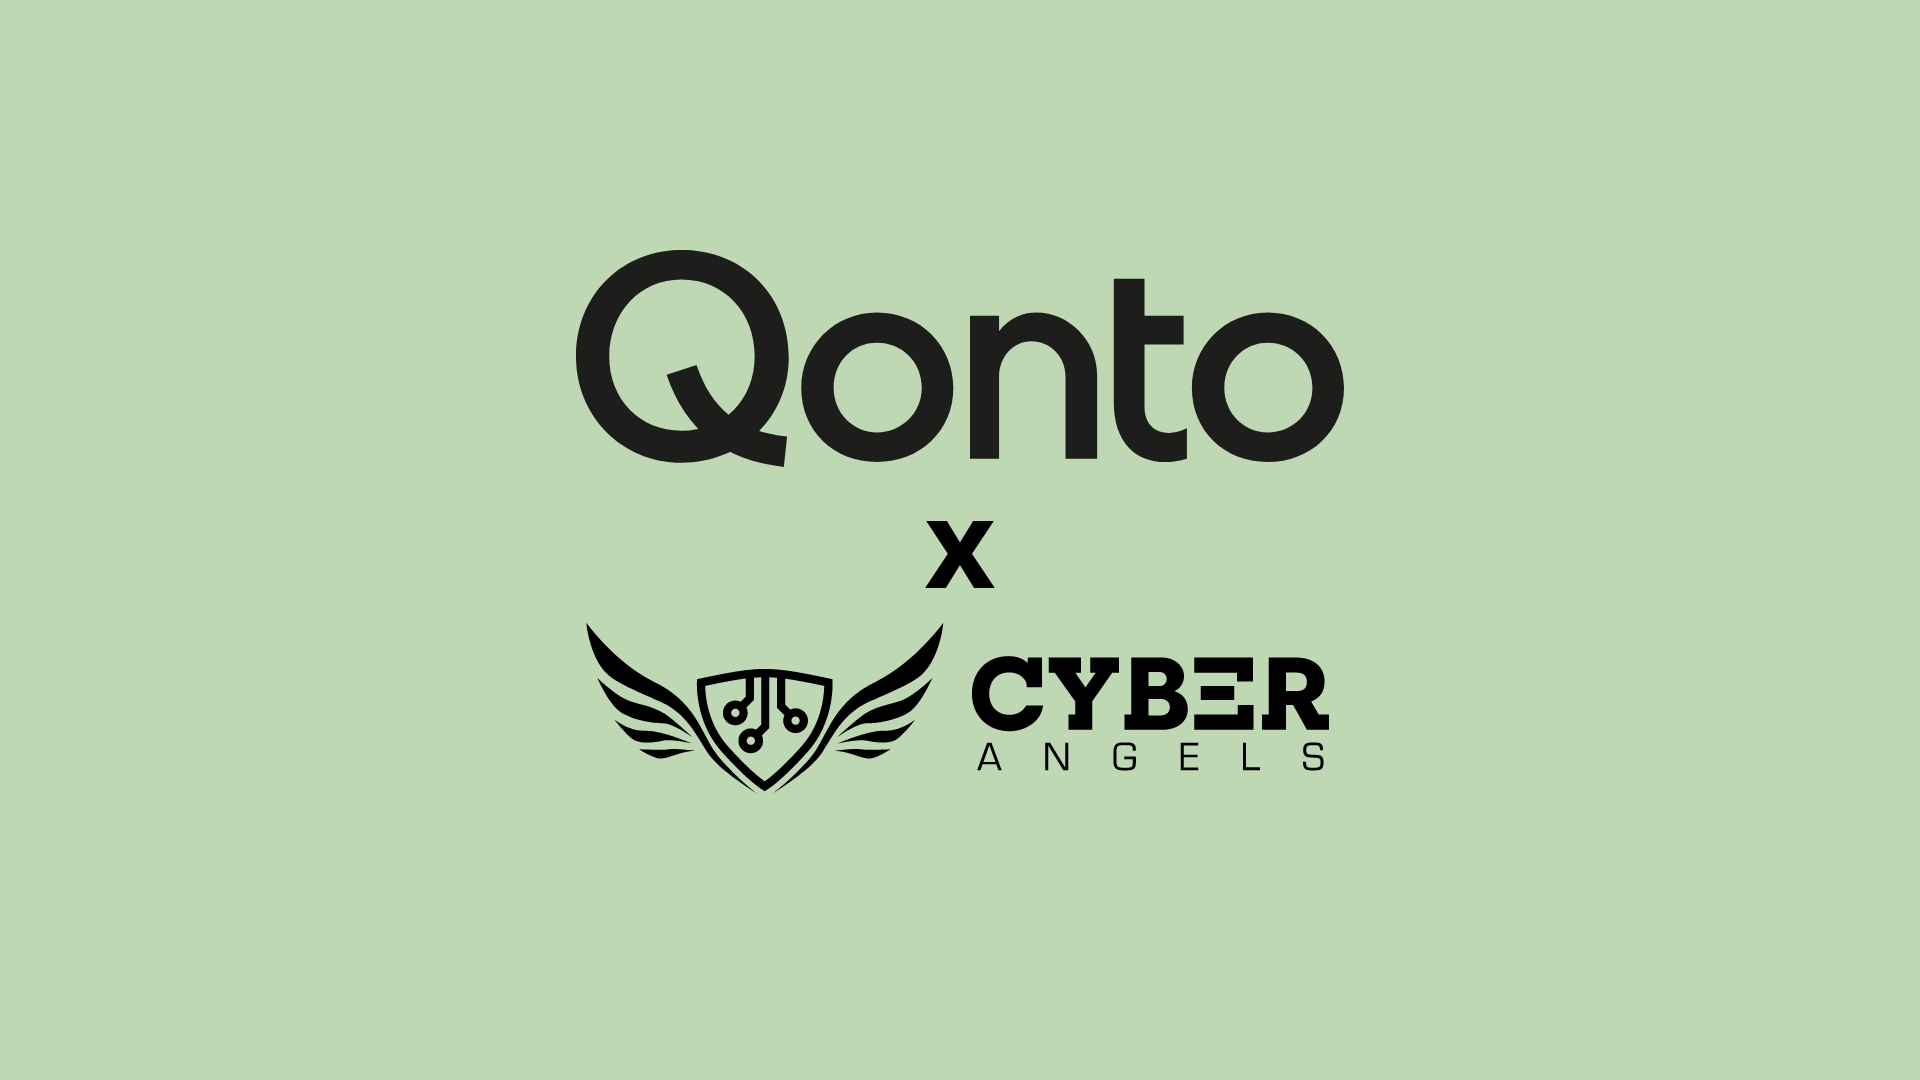 Cyberangels und Qonto: Eine Zusammenarbeit für eine sicherere Zukunft